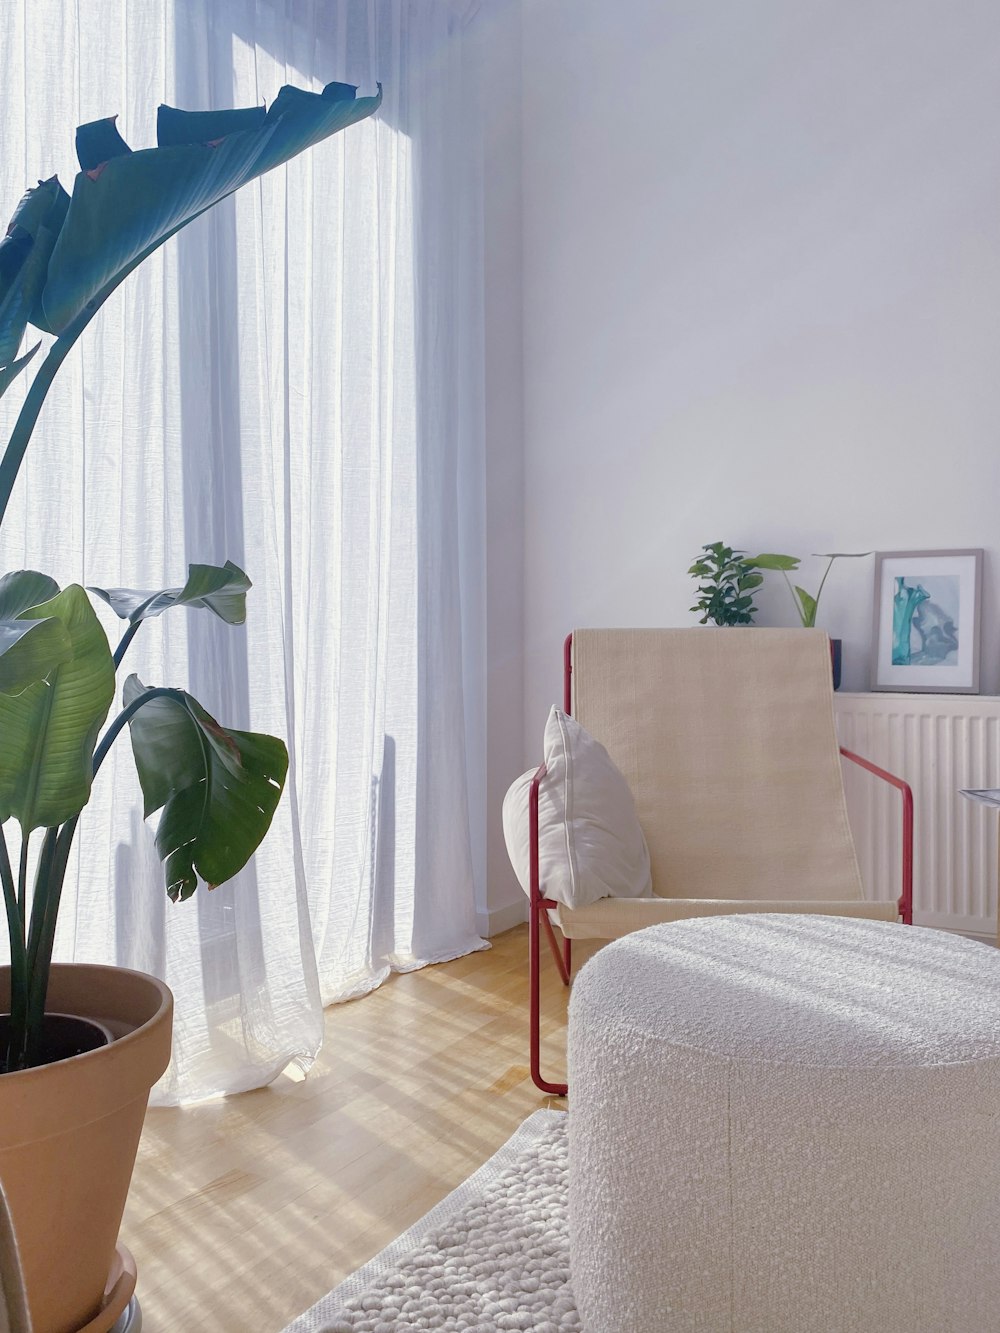 ein Wohnzimmer mit einer Pflanze in einem Topf